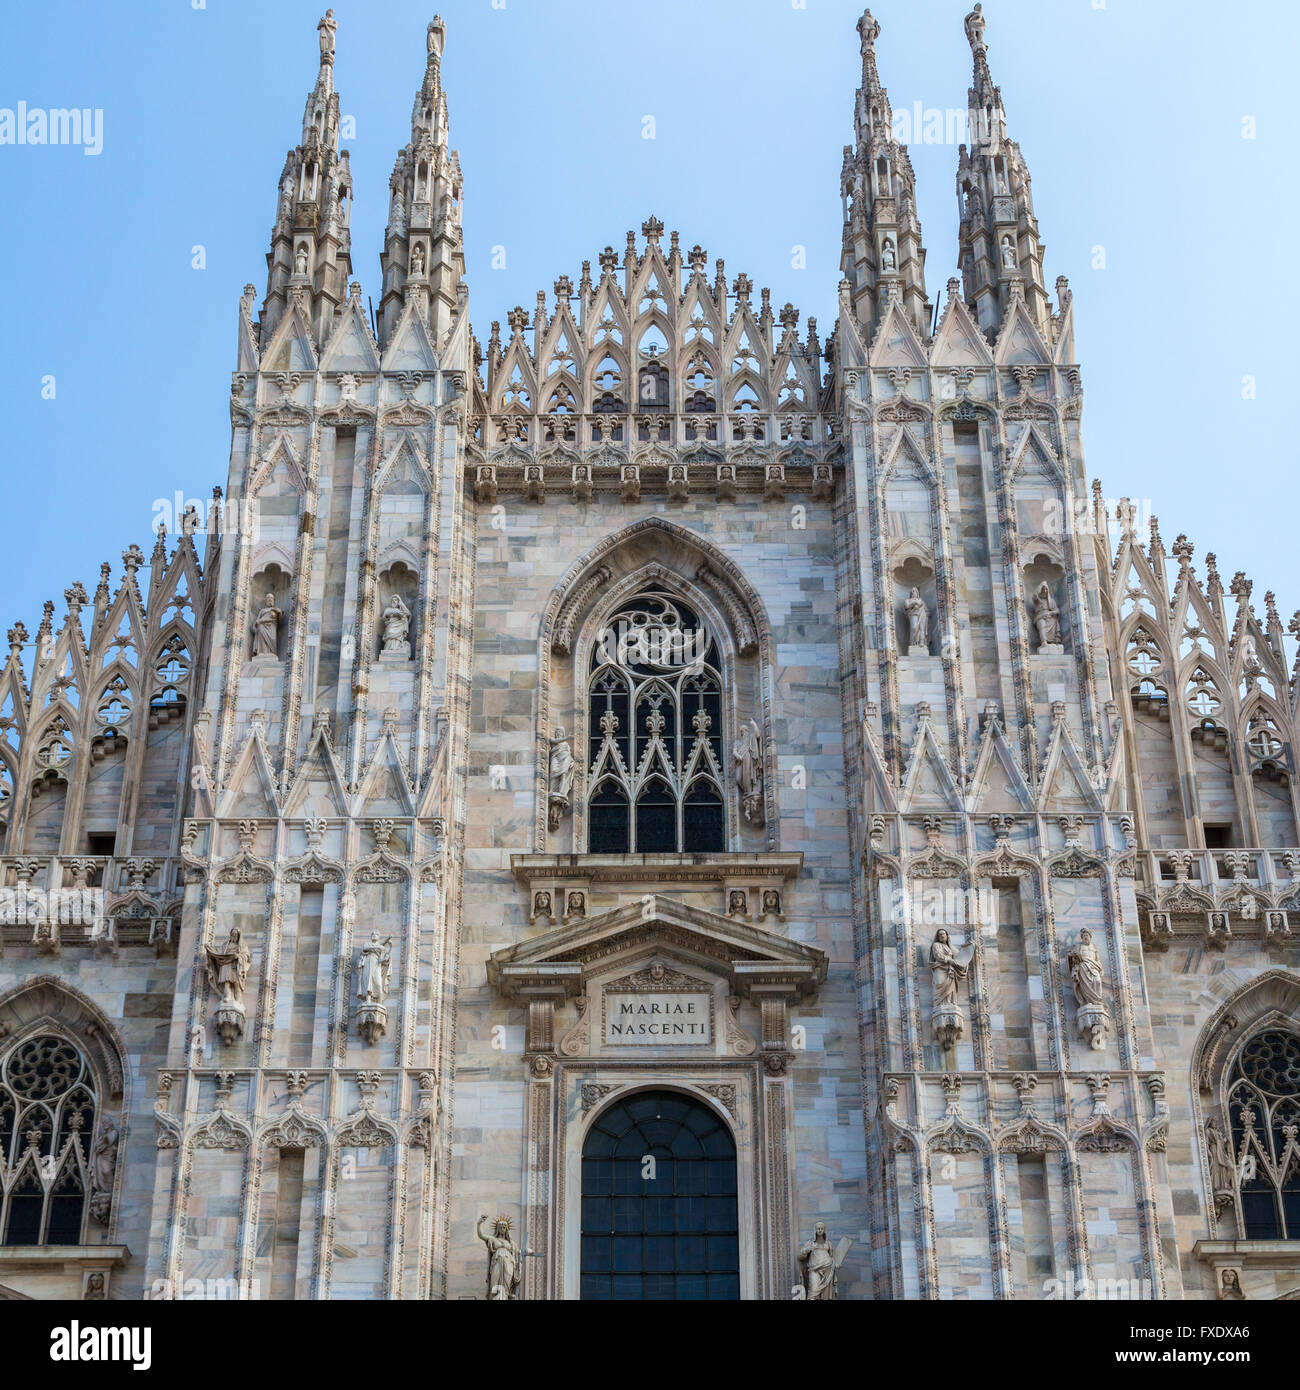 La cathédrale de Milan, Piazza del Duomo, Milan, Italie Banque D'Images